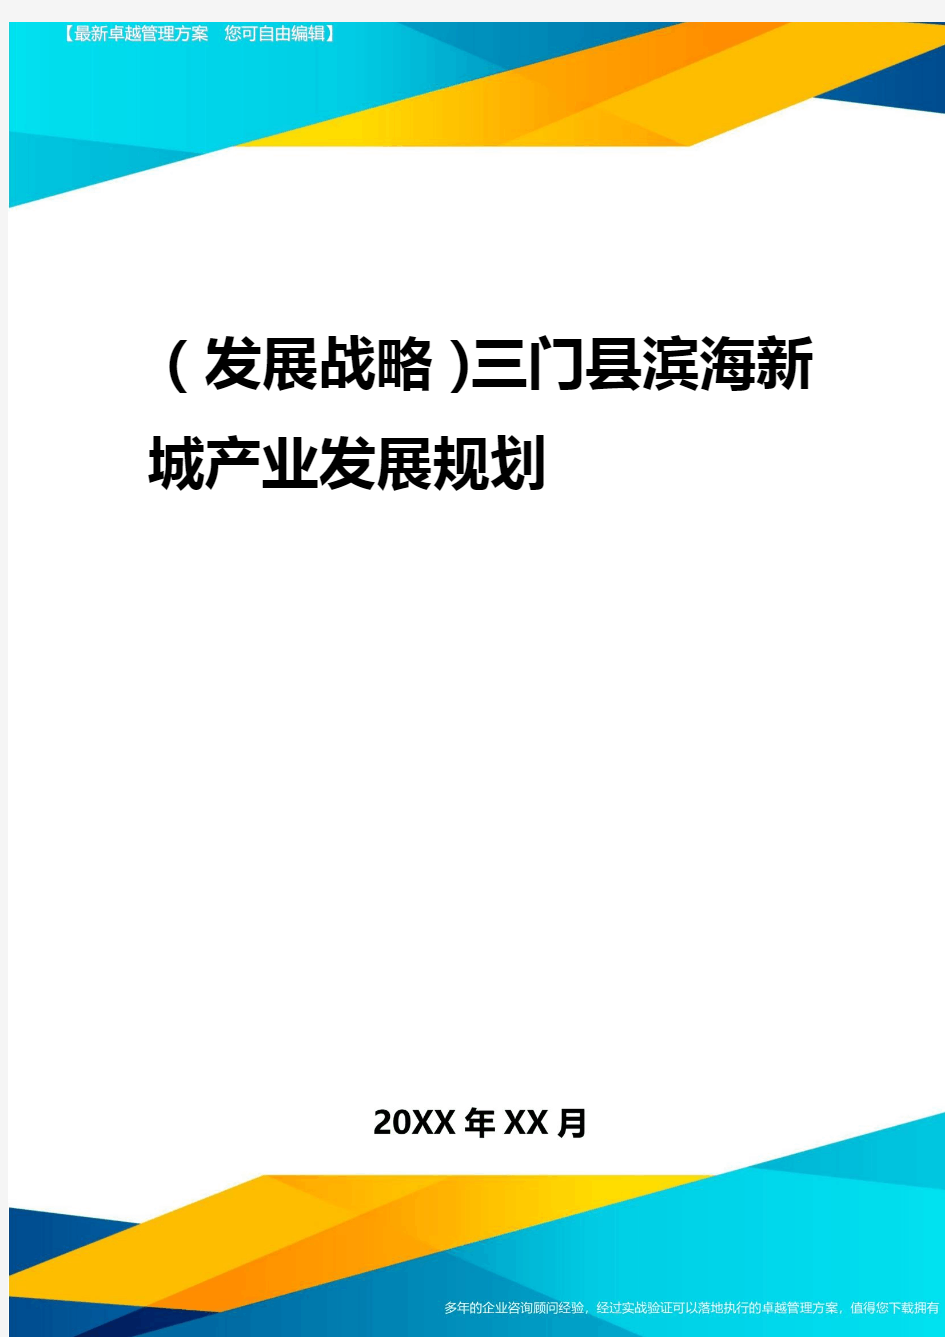 2020年(发展战略)三门县滨海新城产业发展规划